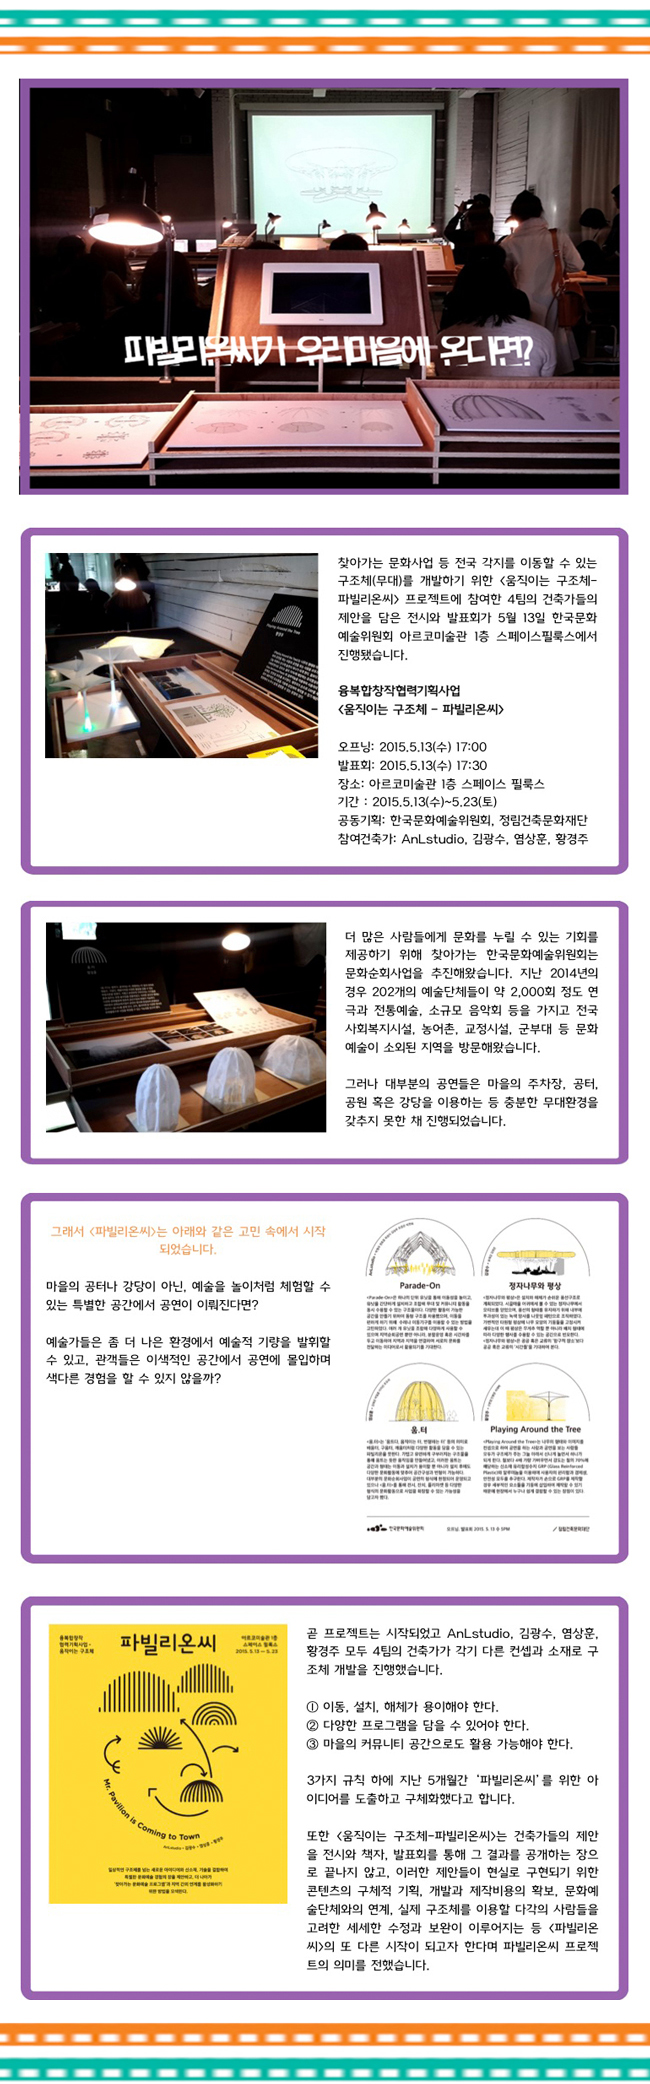 한국문화예술위원회 공연예술센터 공원은 공연중